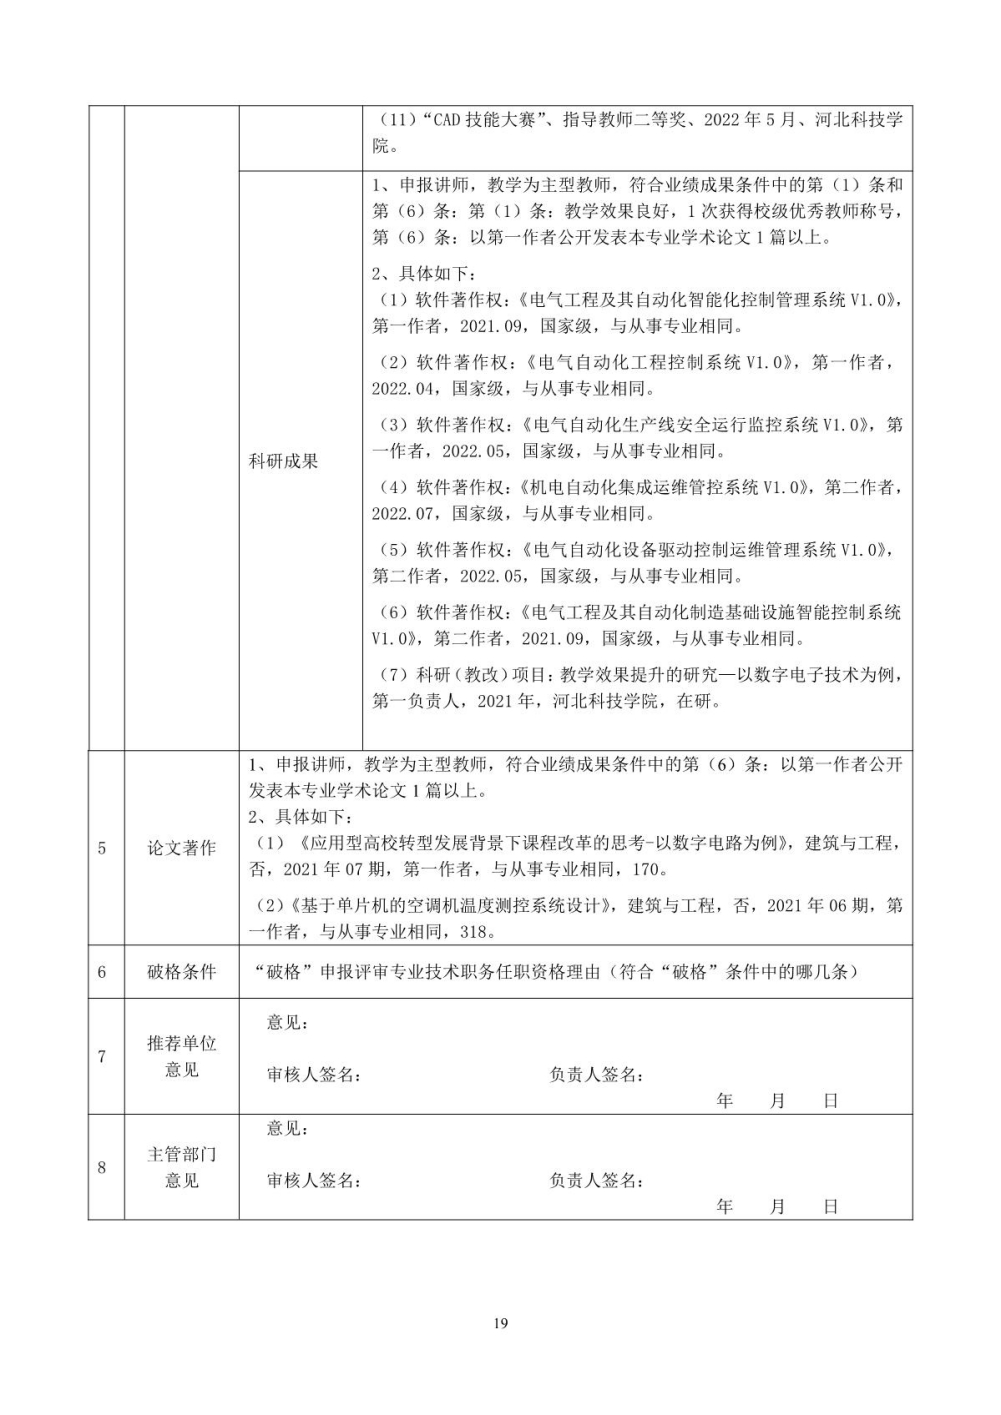 王静2022年任职资格情况一览表